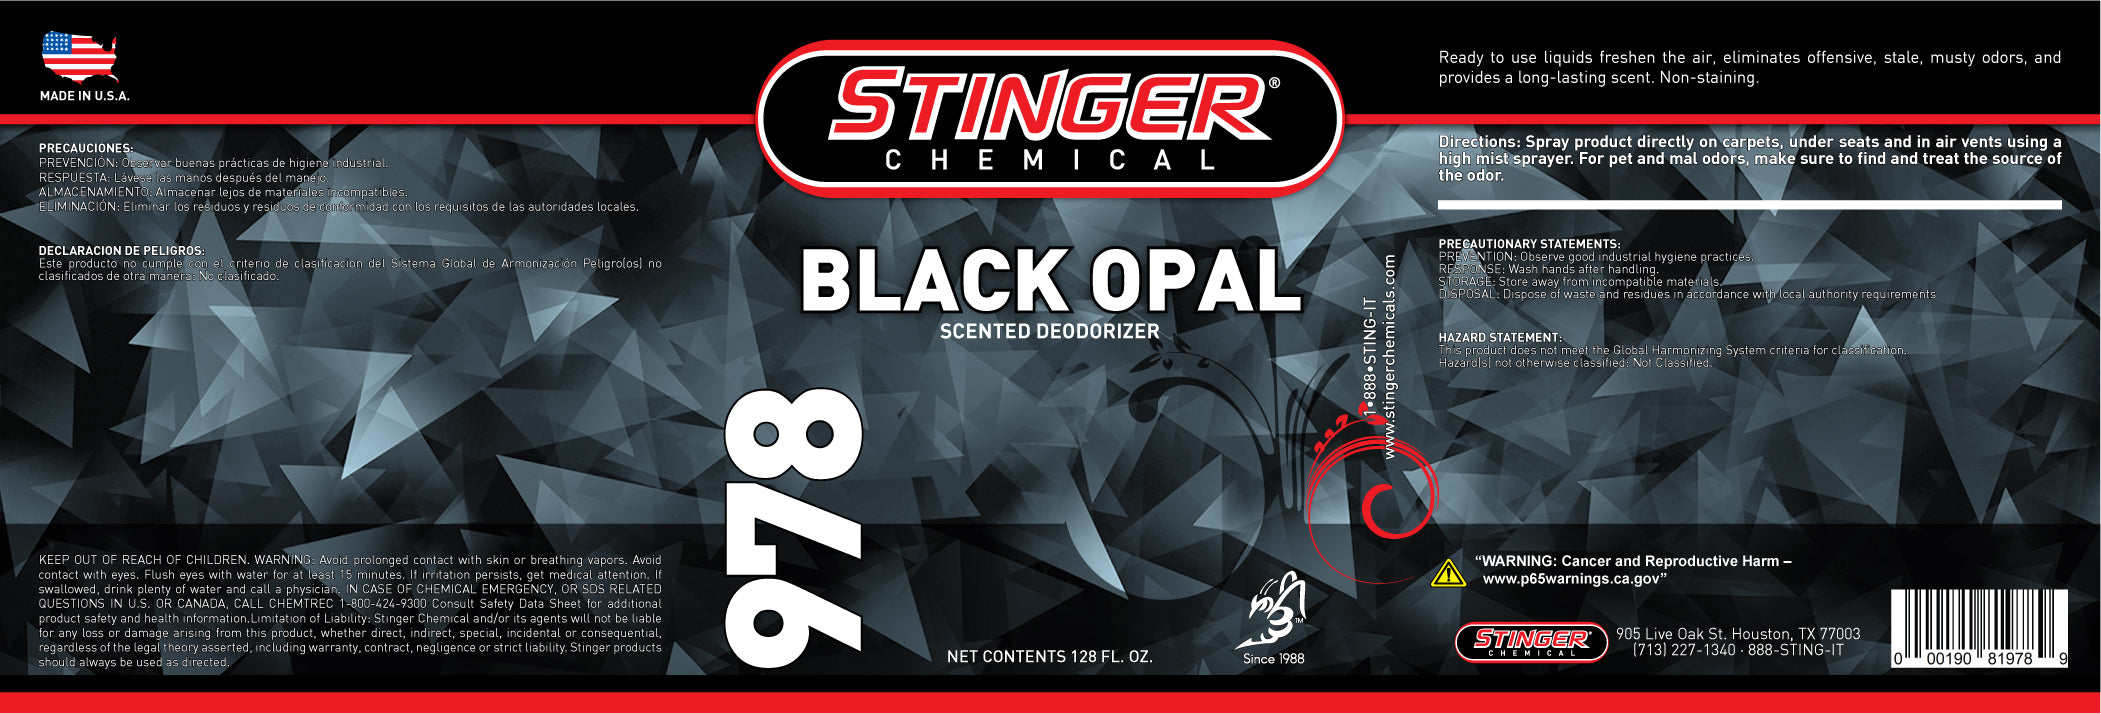 Stinger Chemical SDS Bottle Labels